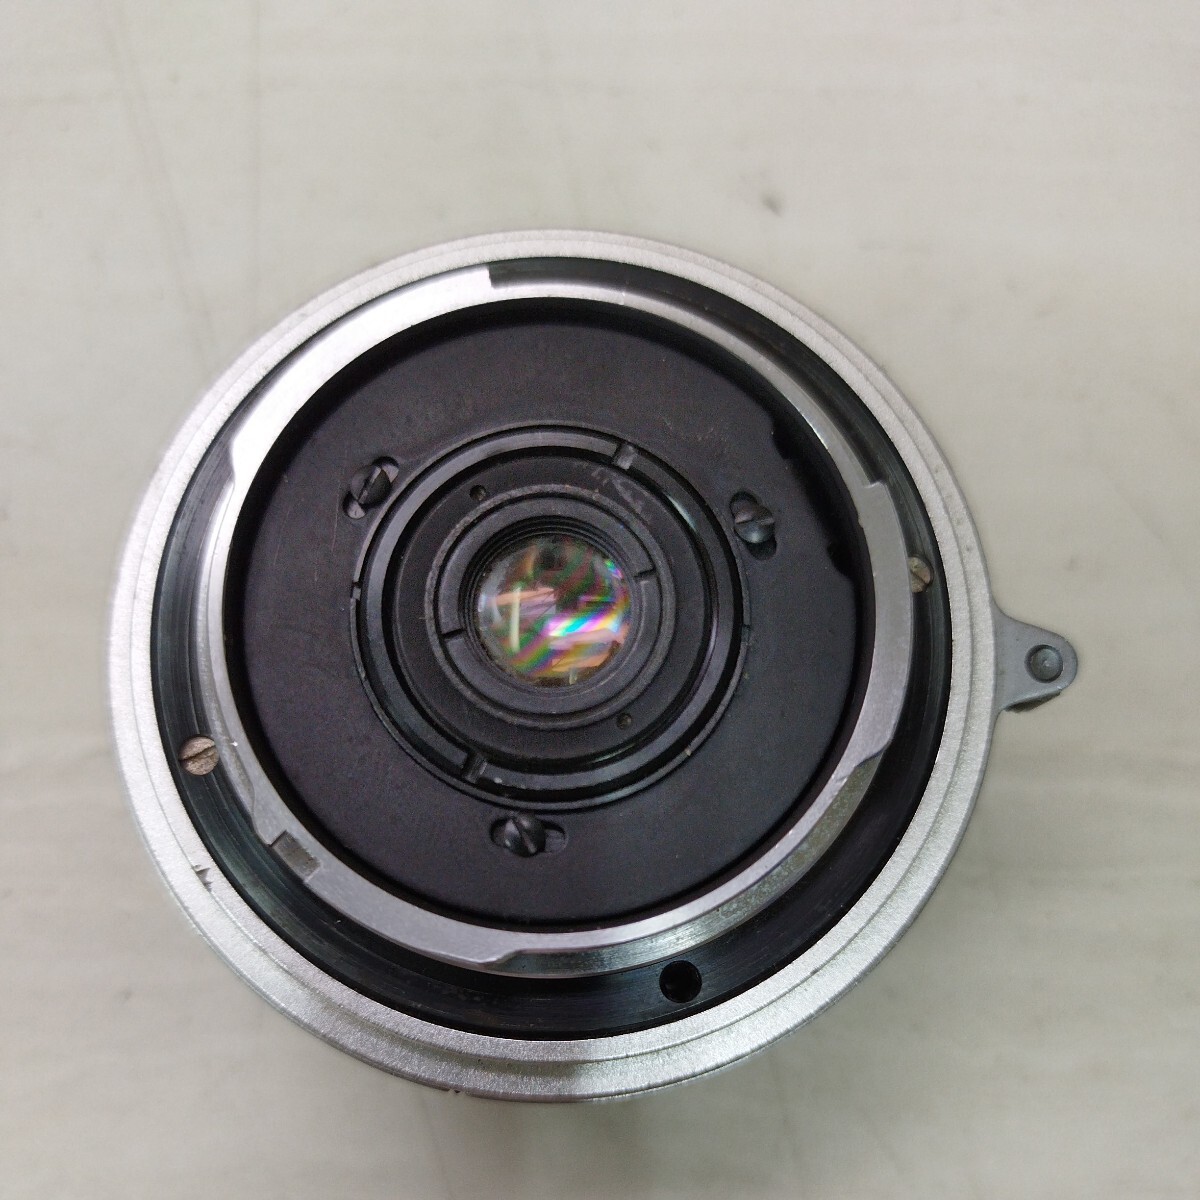 MINOLTA W.ROKKOR-QE 1:4 f=35mm Minolta camera lens Minolta for not yet verification LENS1778